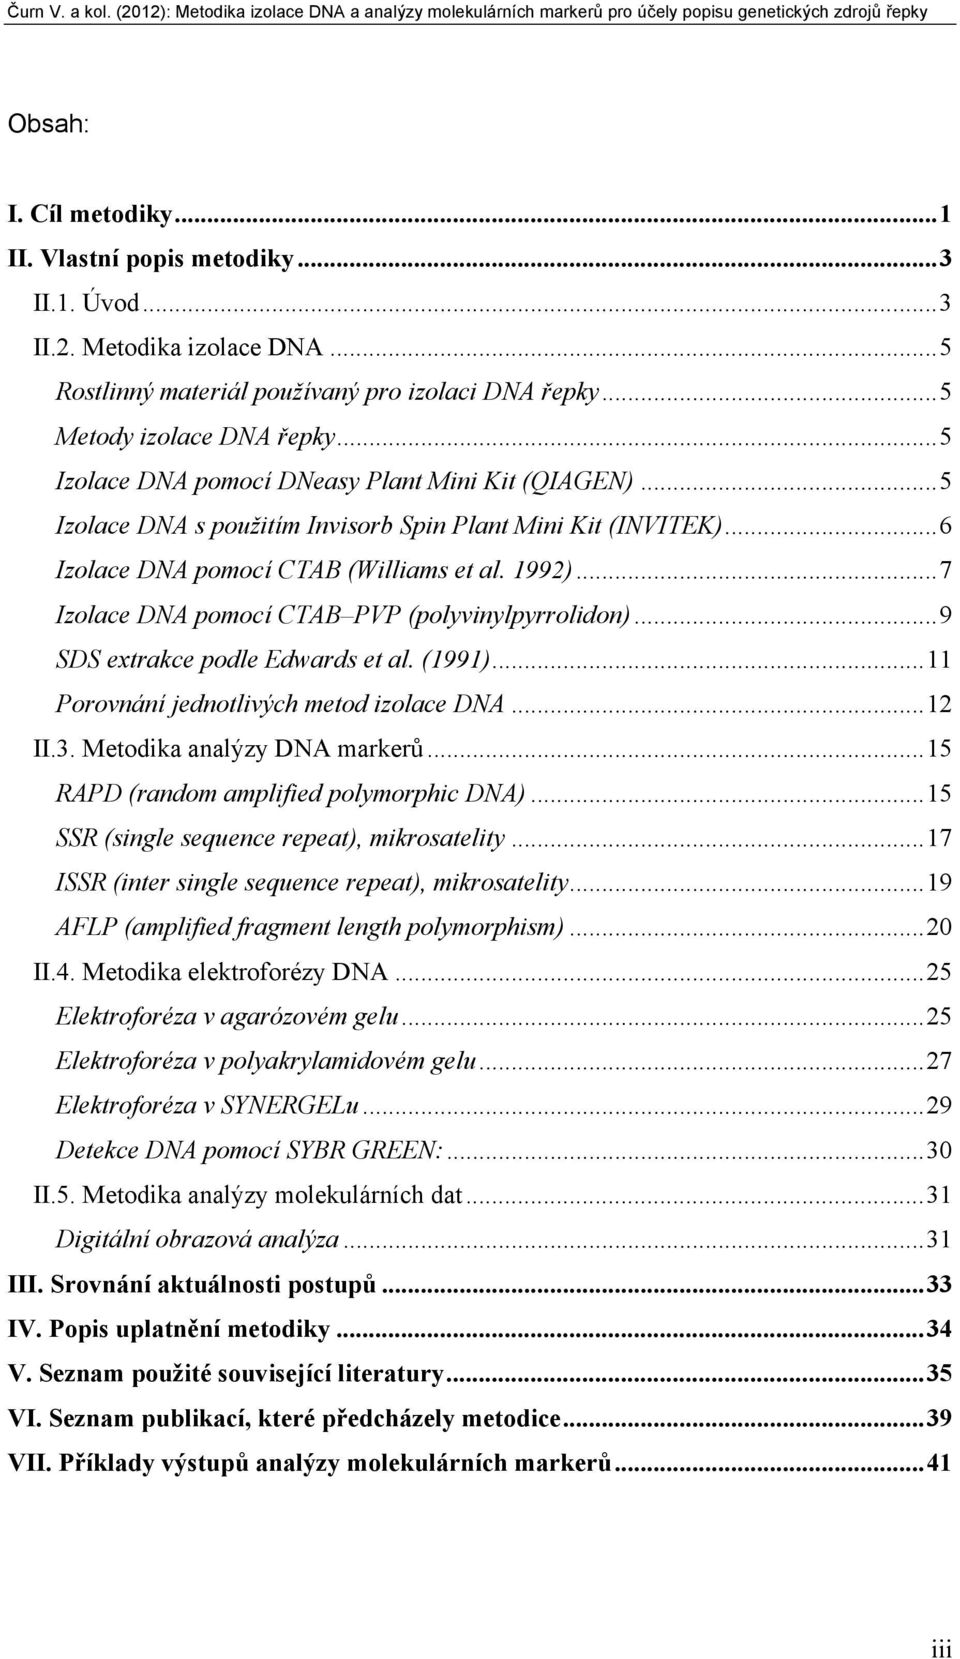 .. 7 Izolace DNA pomocí CTAB PVP (polyvinylpyrrolidon)... 9 SDS extrakce podle Edwards et al. (1991)... 11 Porovnání jednotlivých metod izolace DNA... 12 II.3. Metodika analýzy DNA markerů.